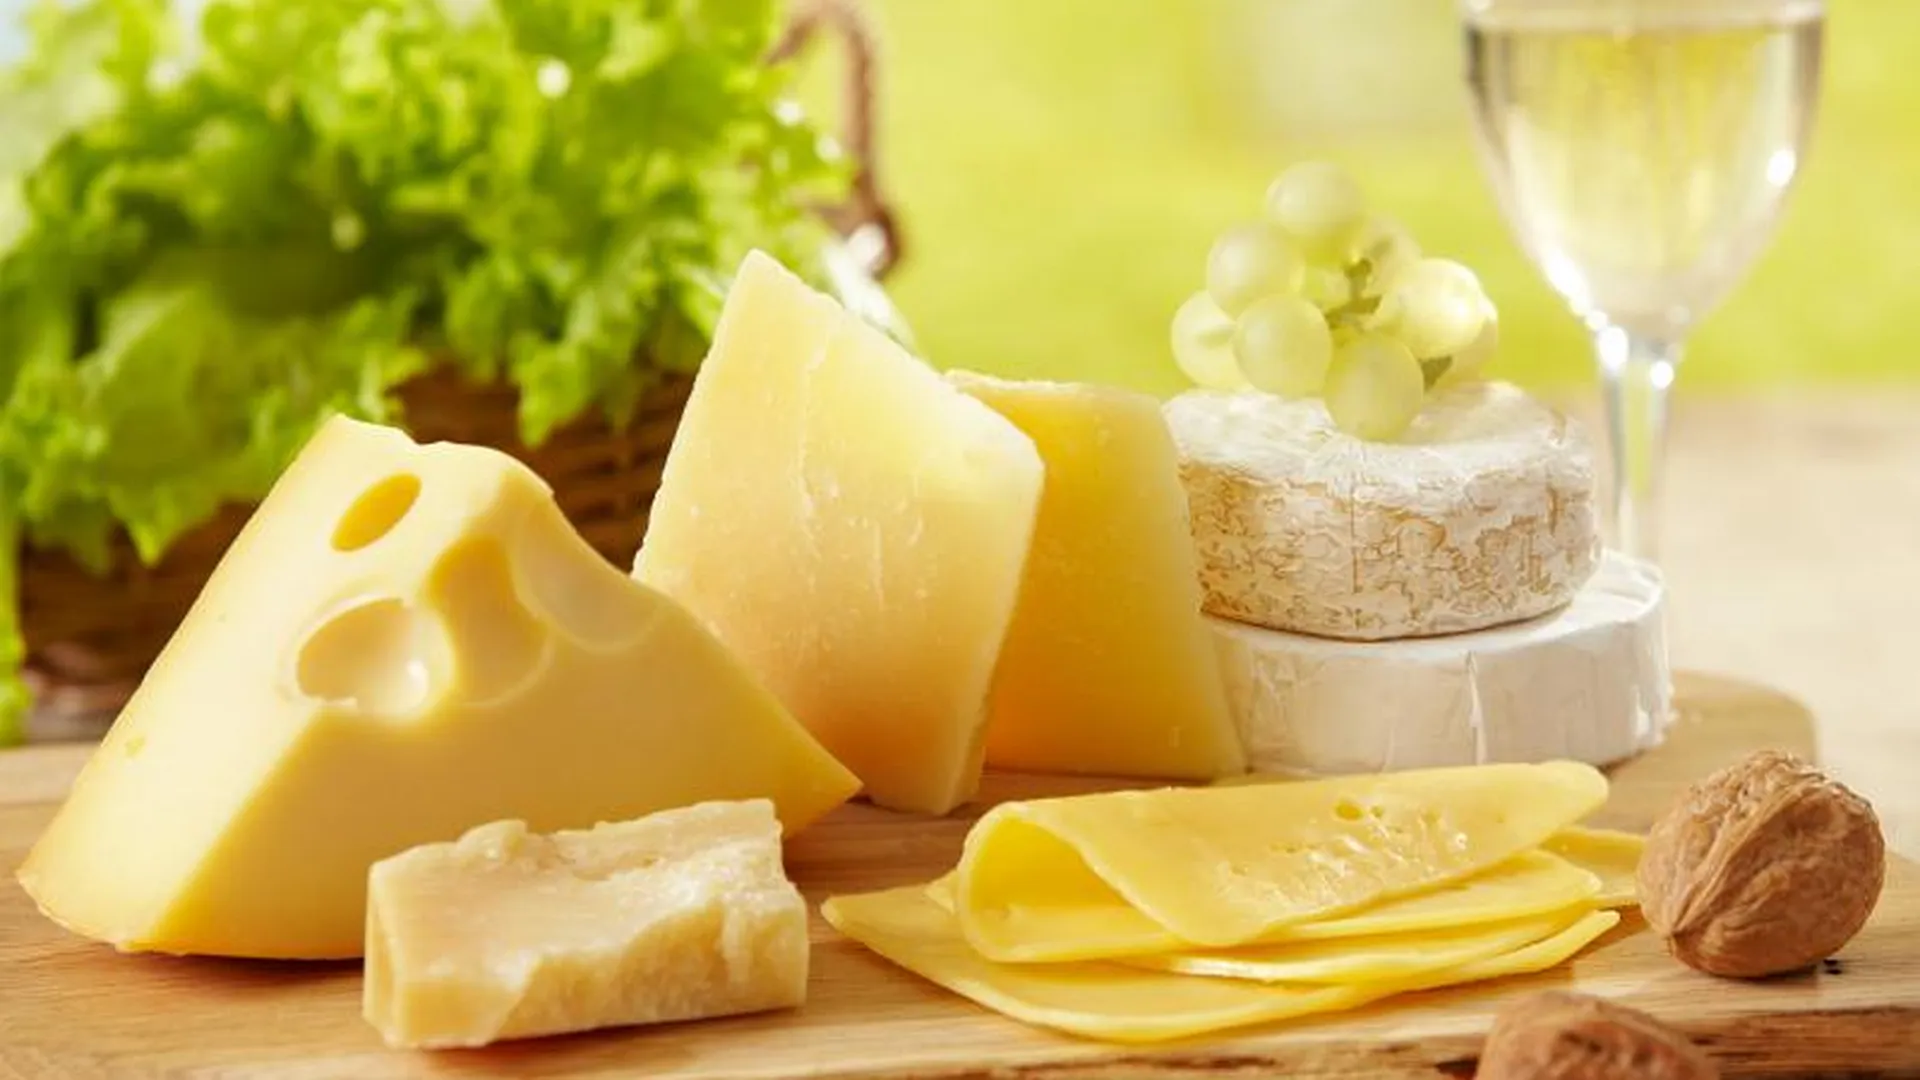 Сыр, орехи и свежую рыбу можно будет купить на Ценопаде в Ступино